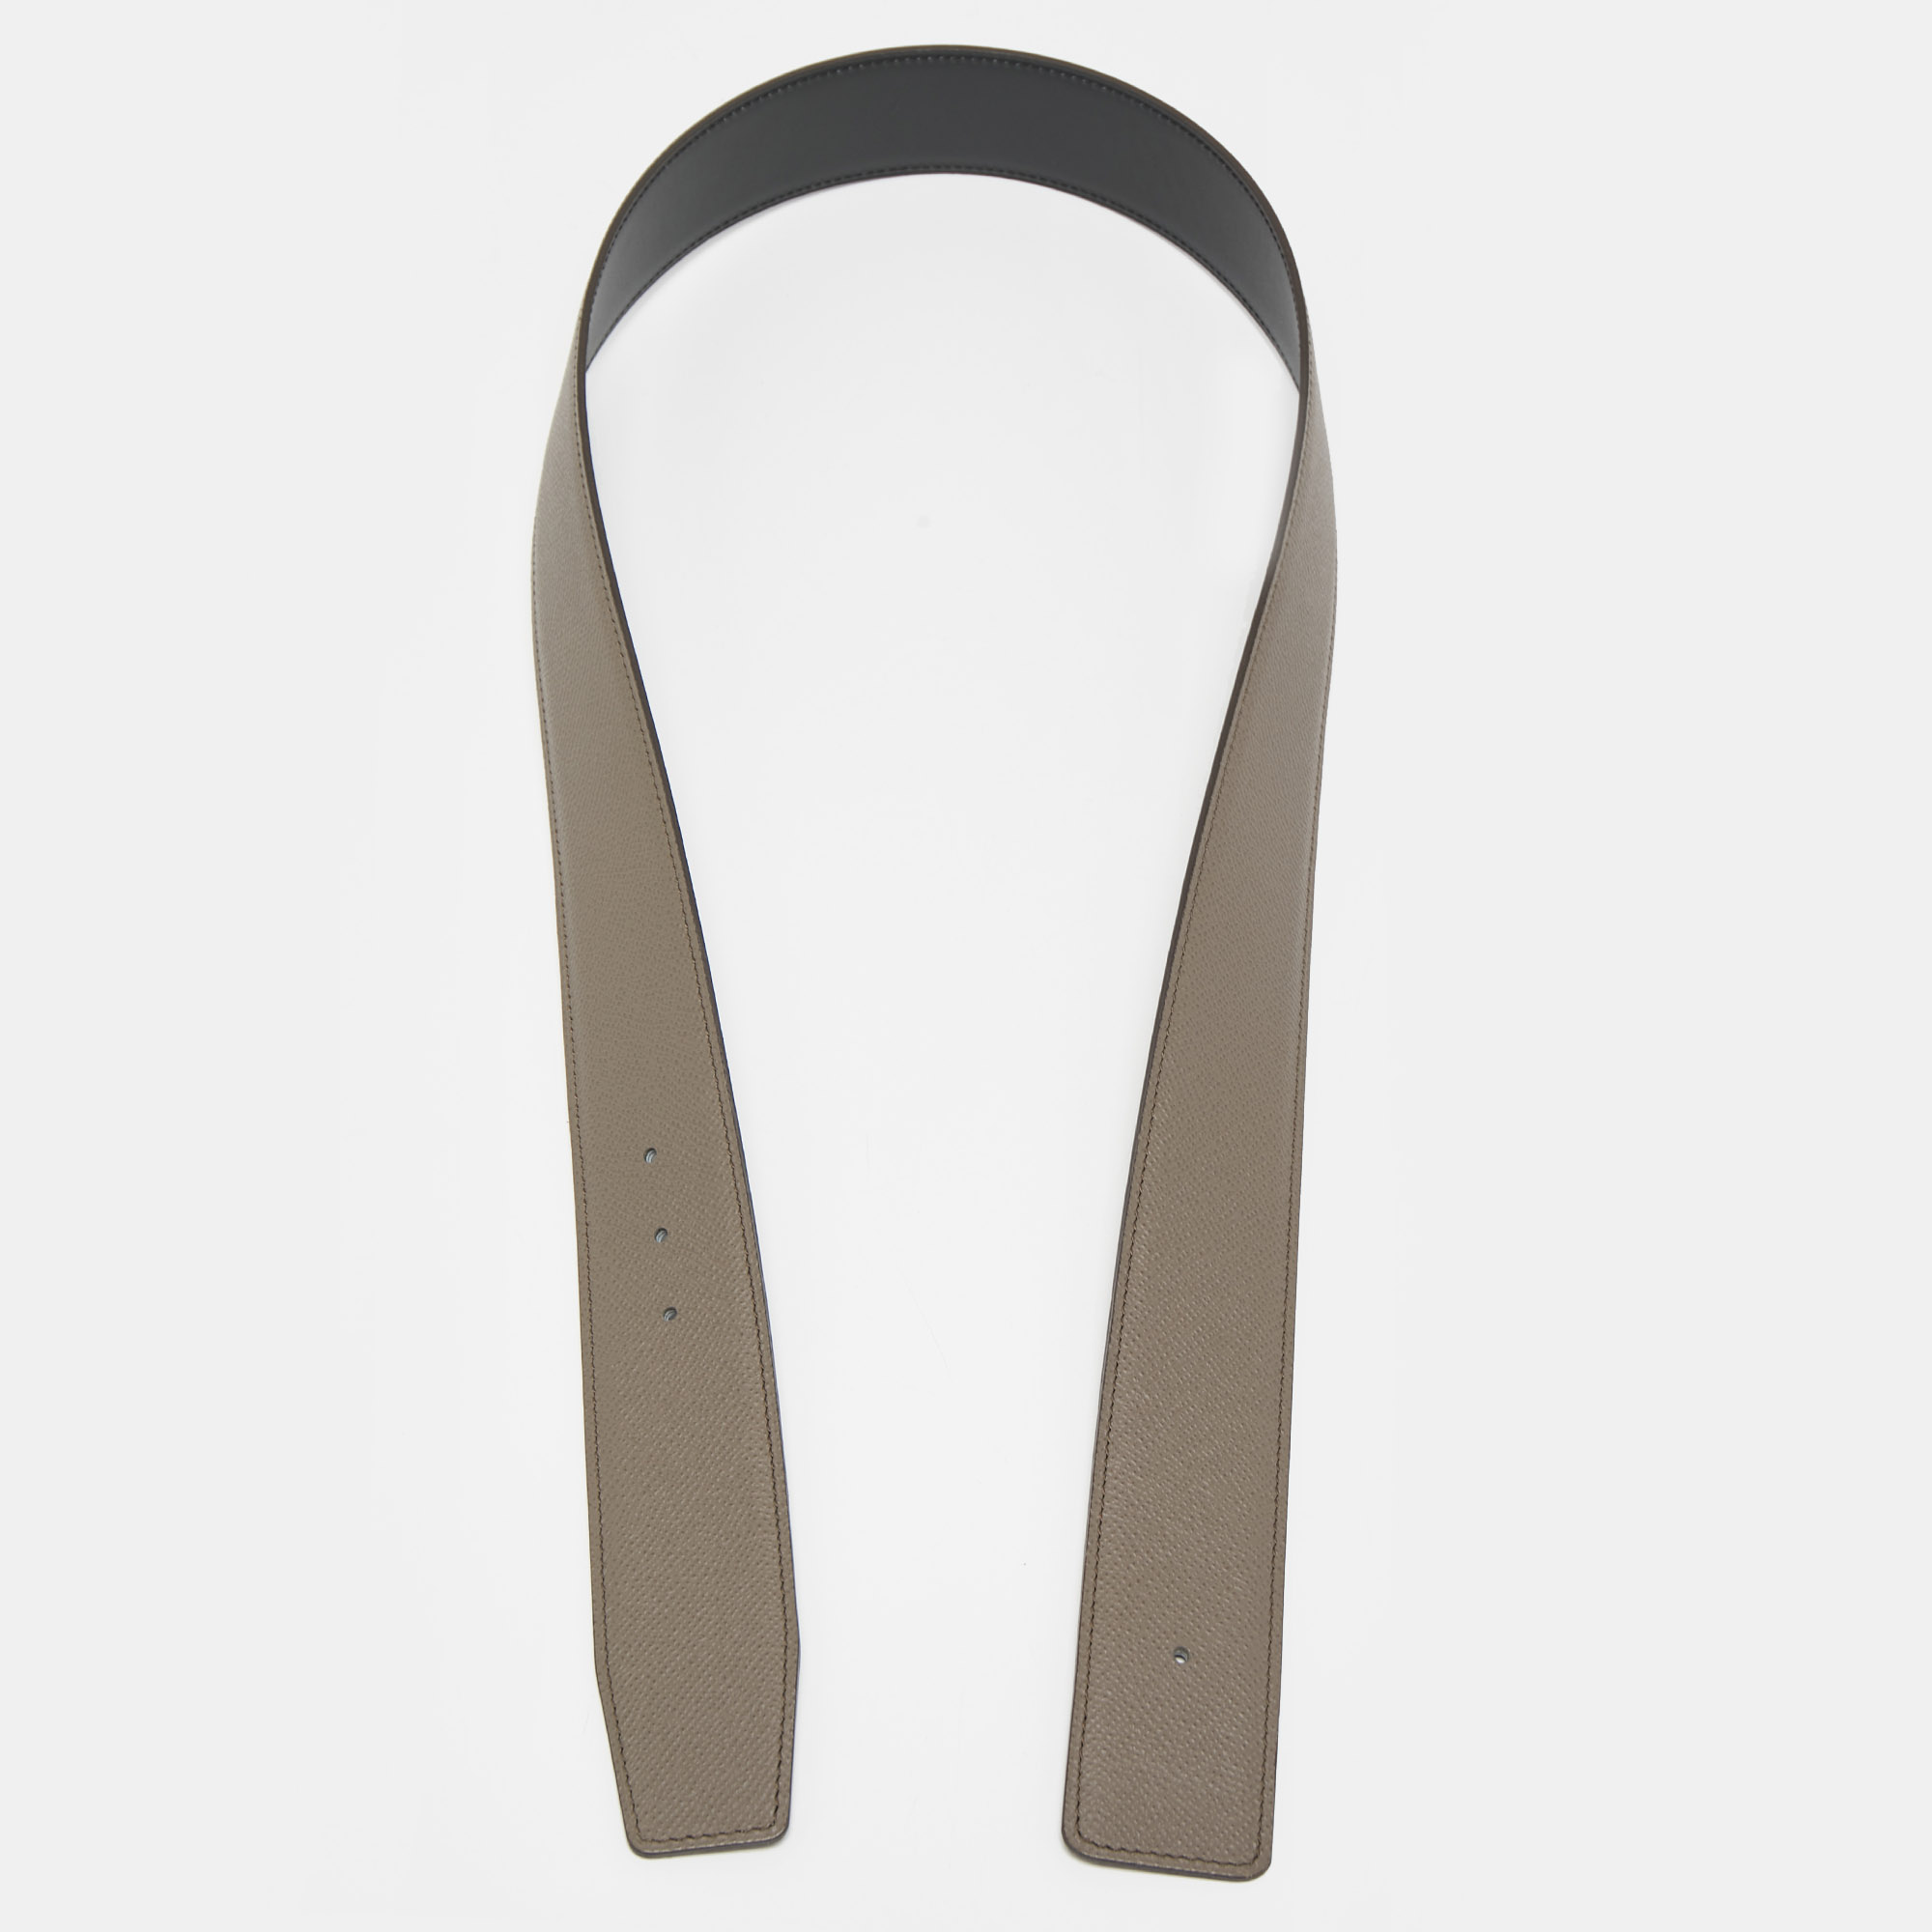 Hermes gris etain/noir epsom and chamonix reversible belt strap 85 cm